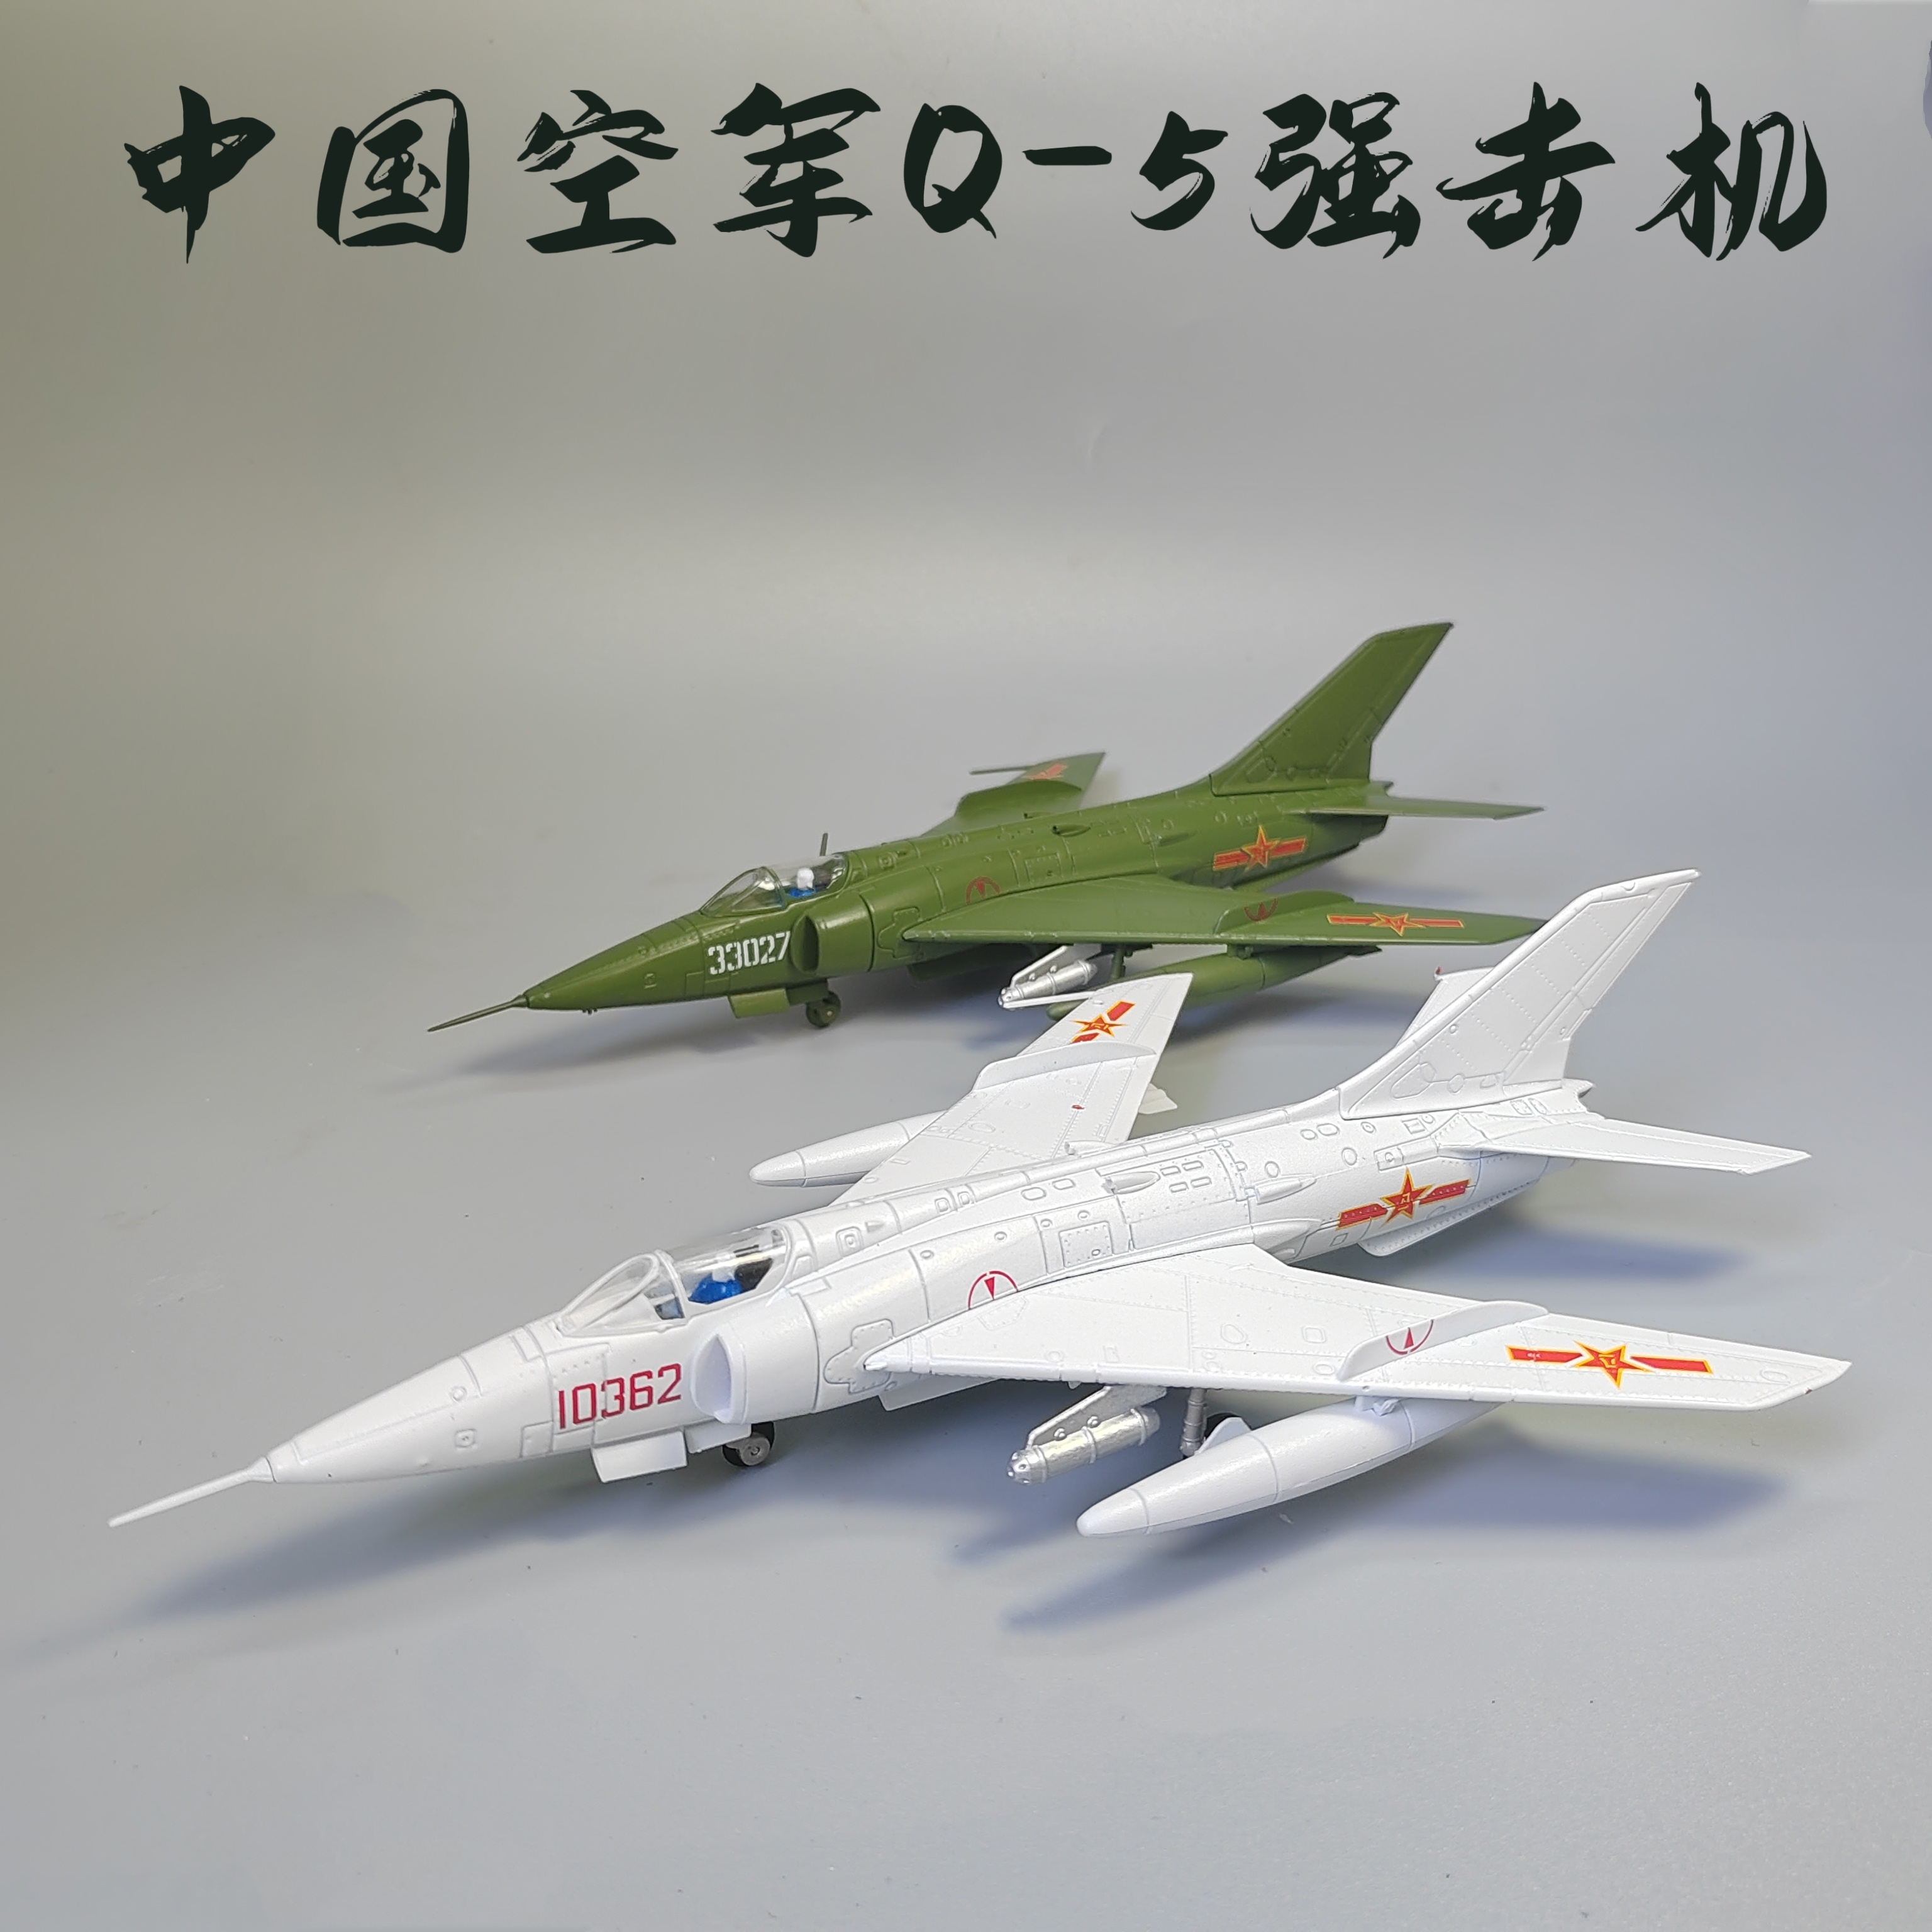 中国空军1/72强5飞机模型玩具合金强击机仿真军事摆件退伍纪念品